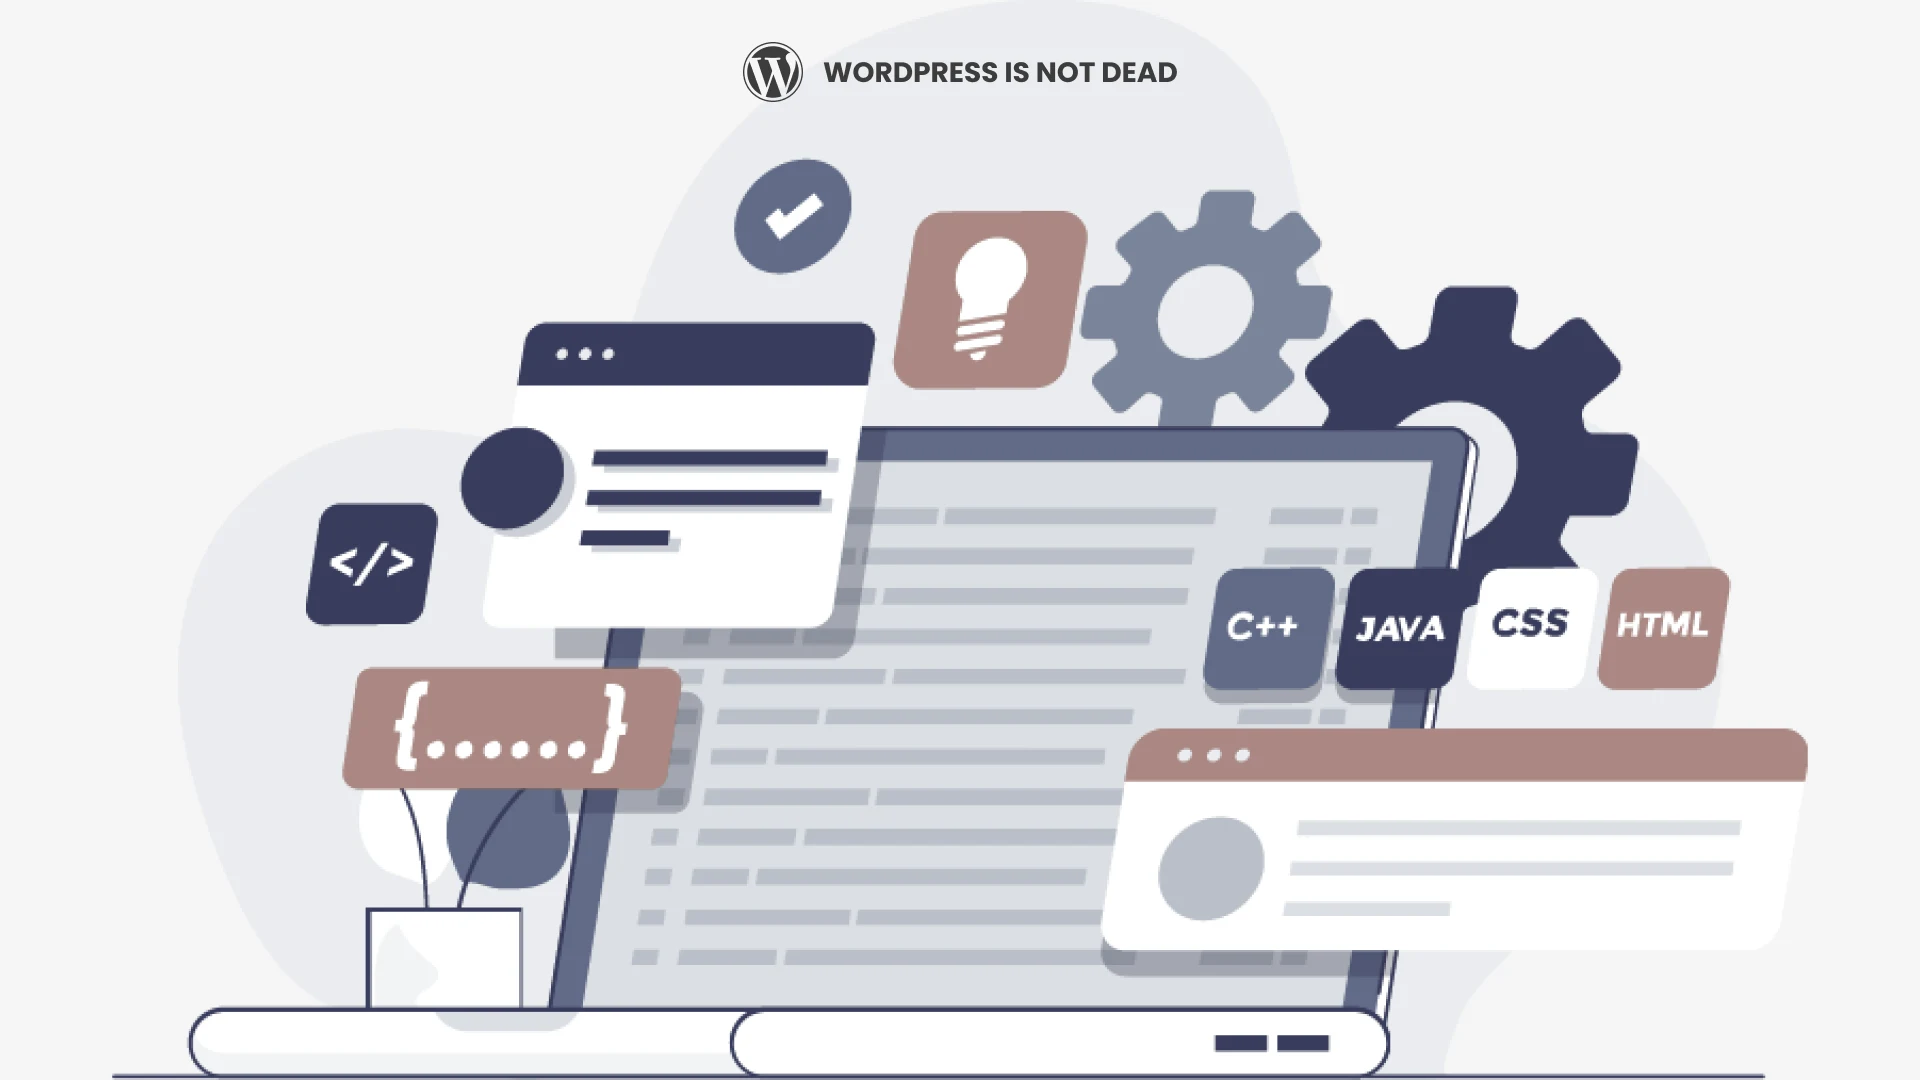 WordPress in not dead